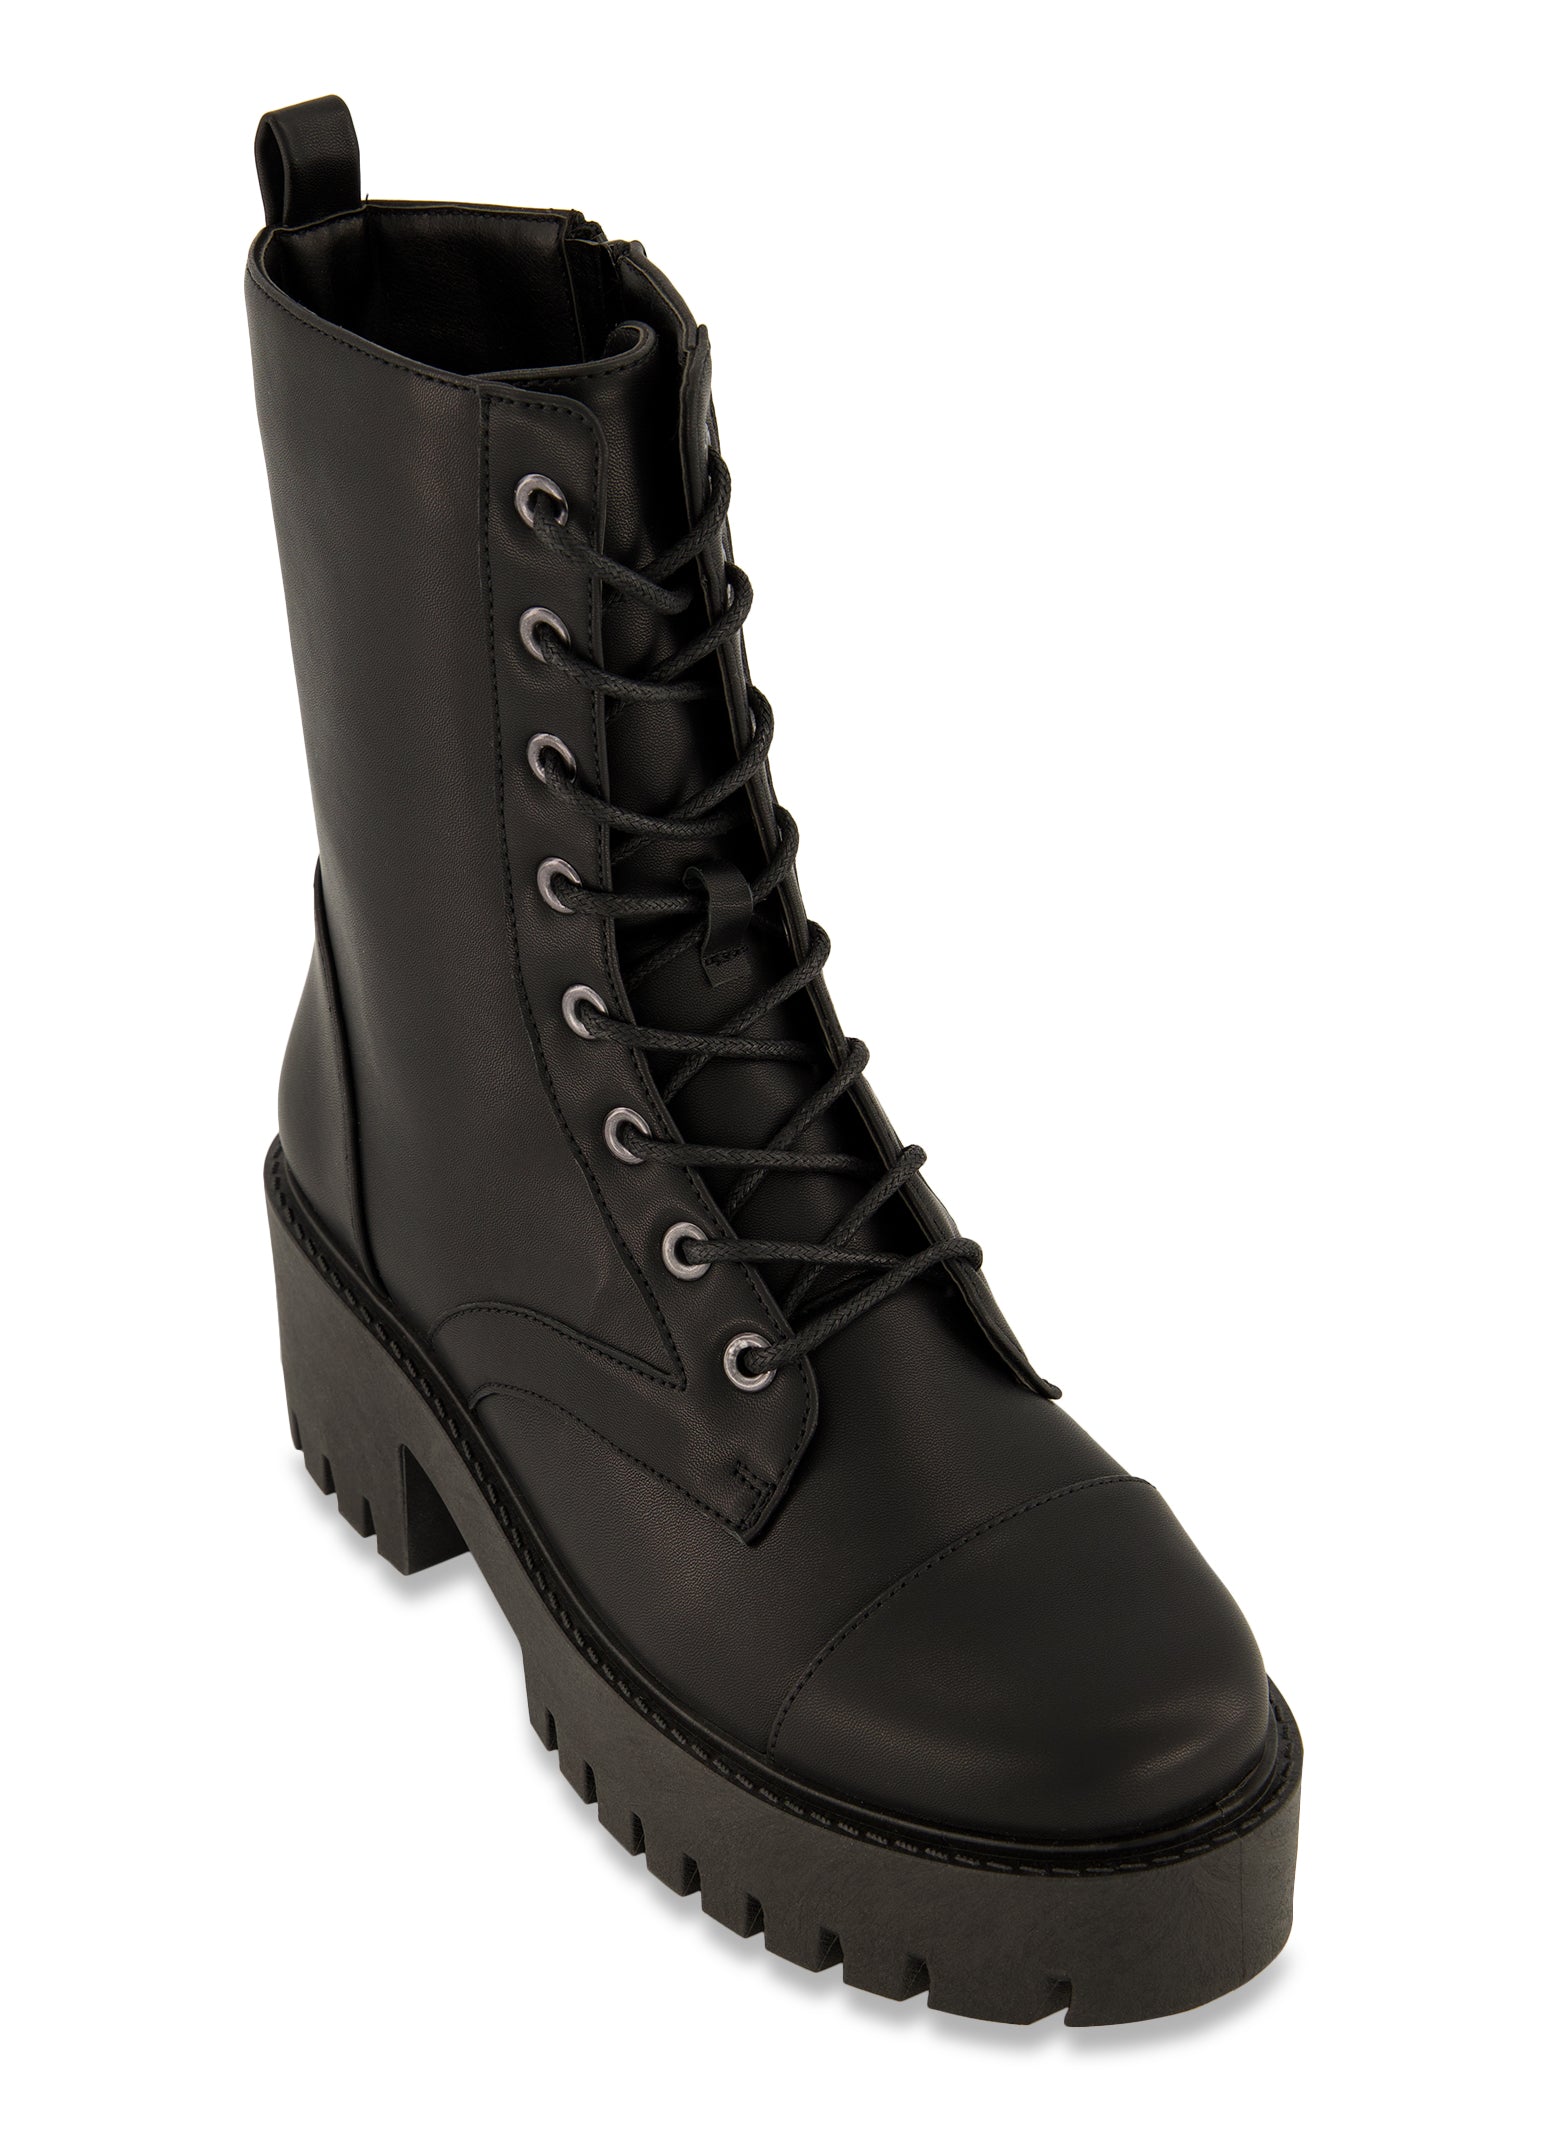 Women's Combat Boots, Lace-up & Zipper Boots